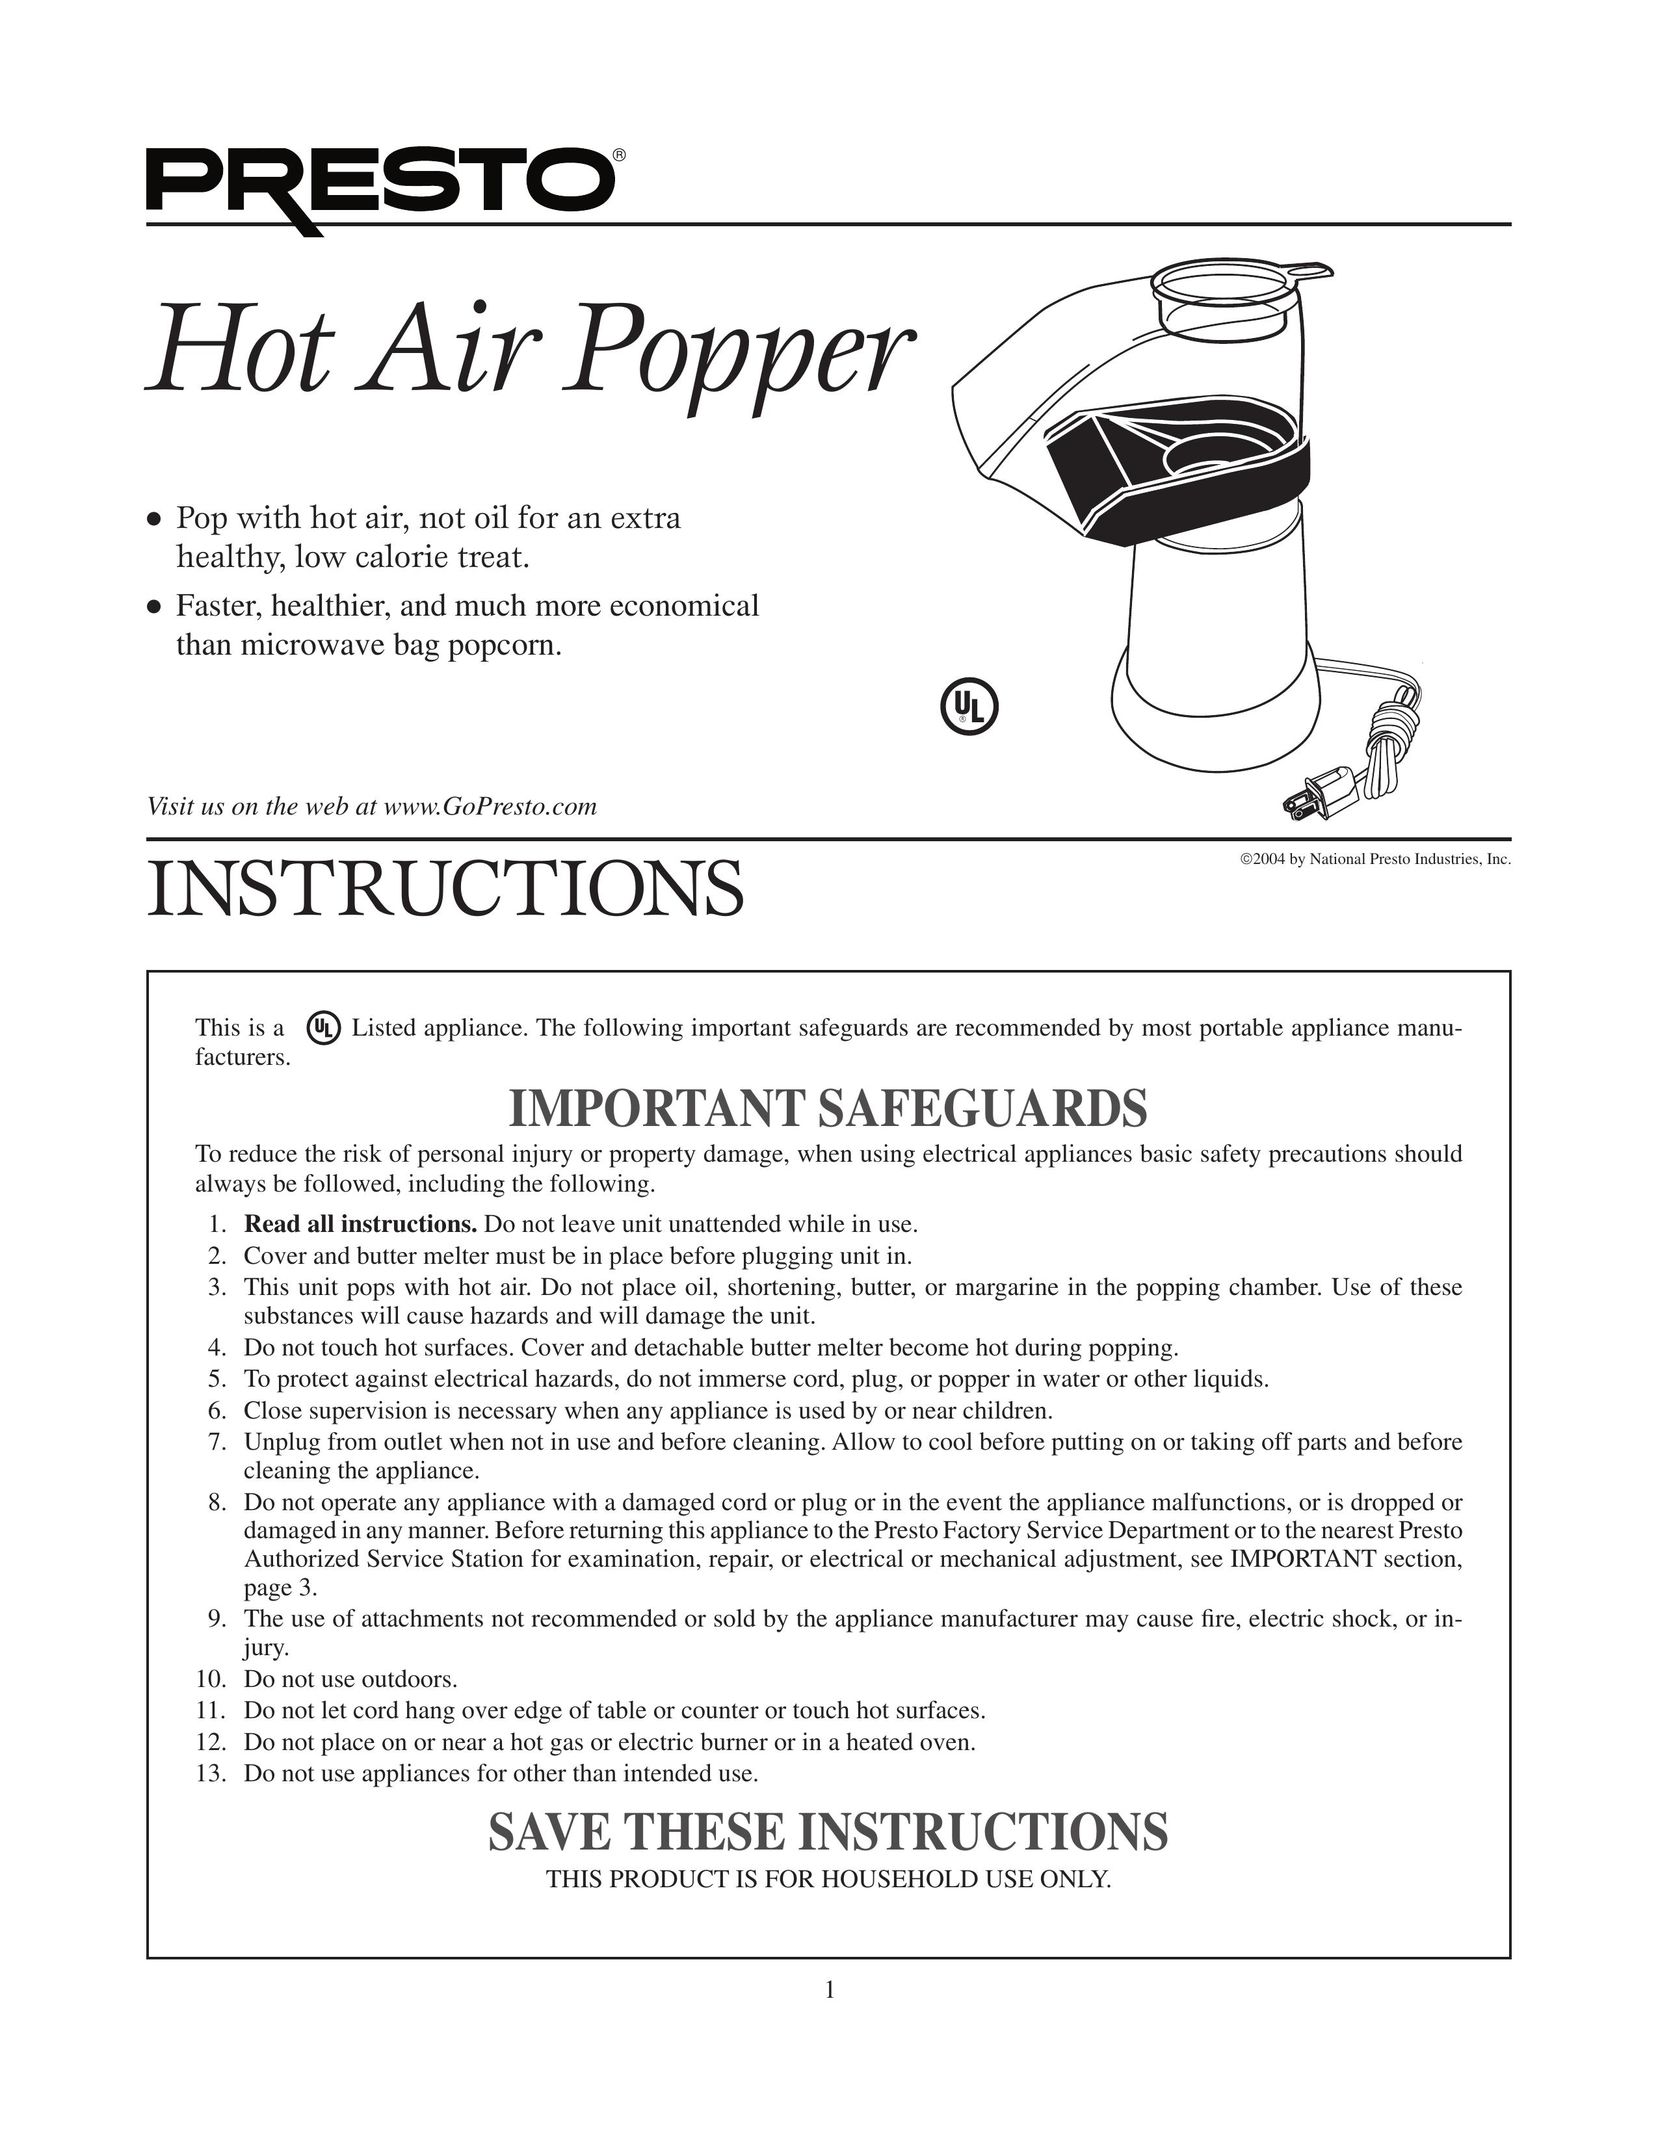 Presto Popper Popcorn Poppers User Manual